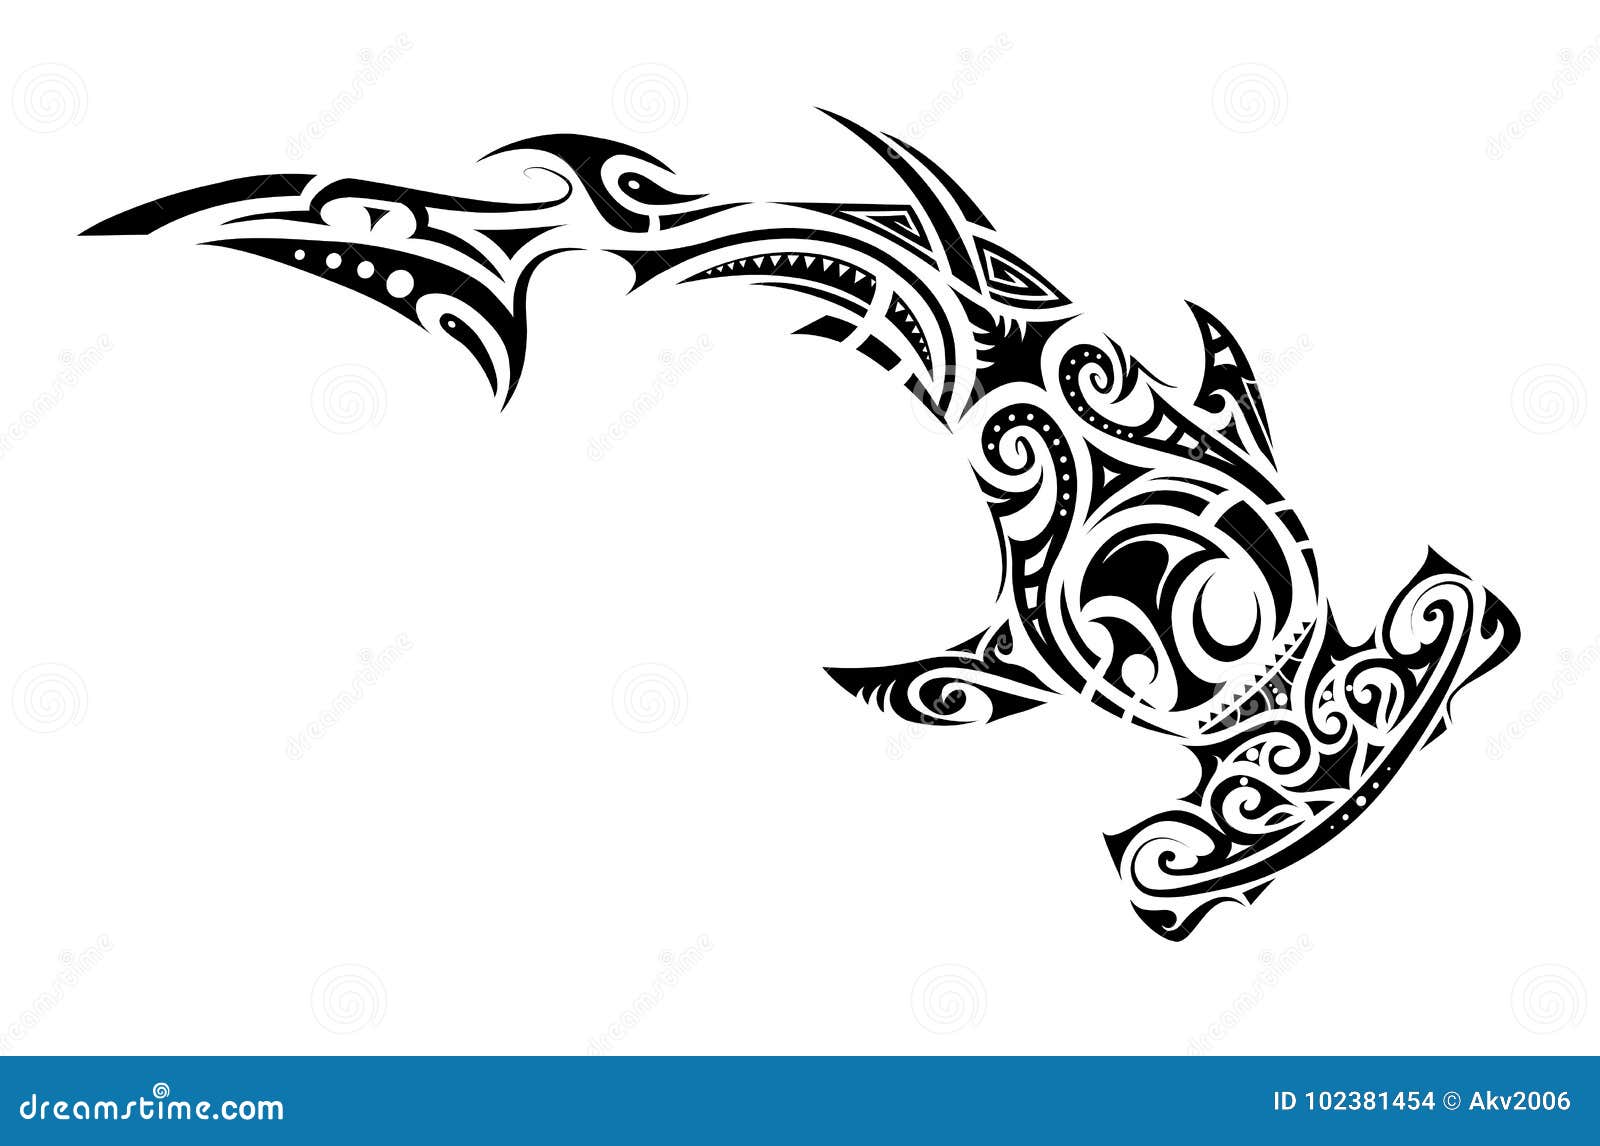 Shark tattoo stock illustrations â shark tattoo stock illustrations vectors clipart